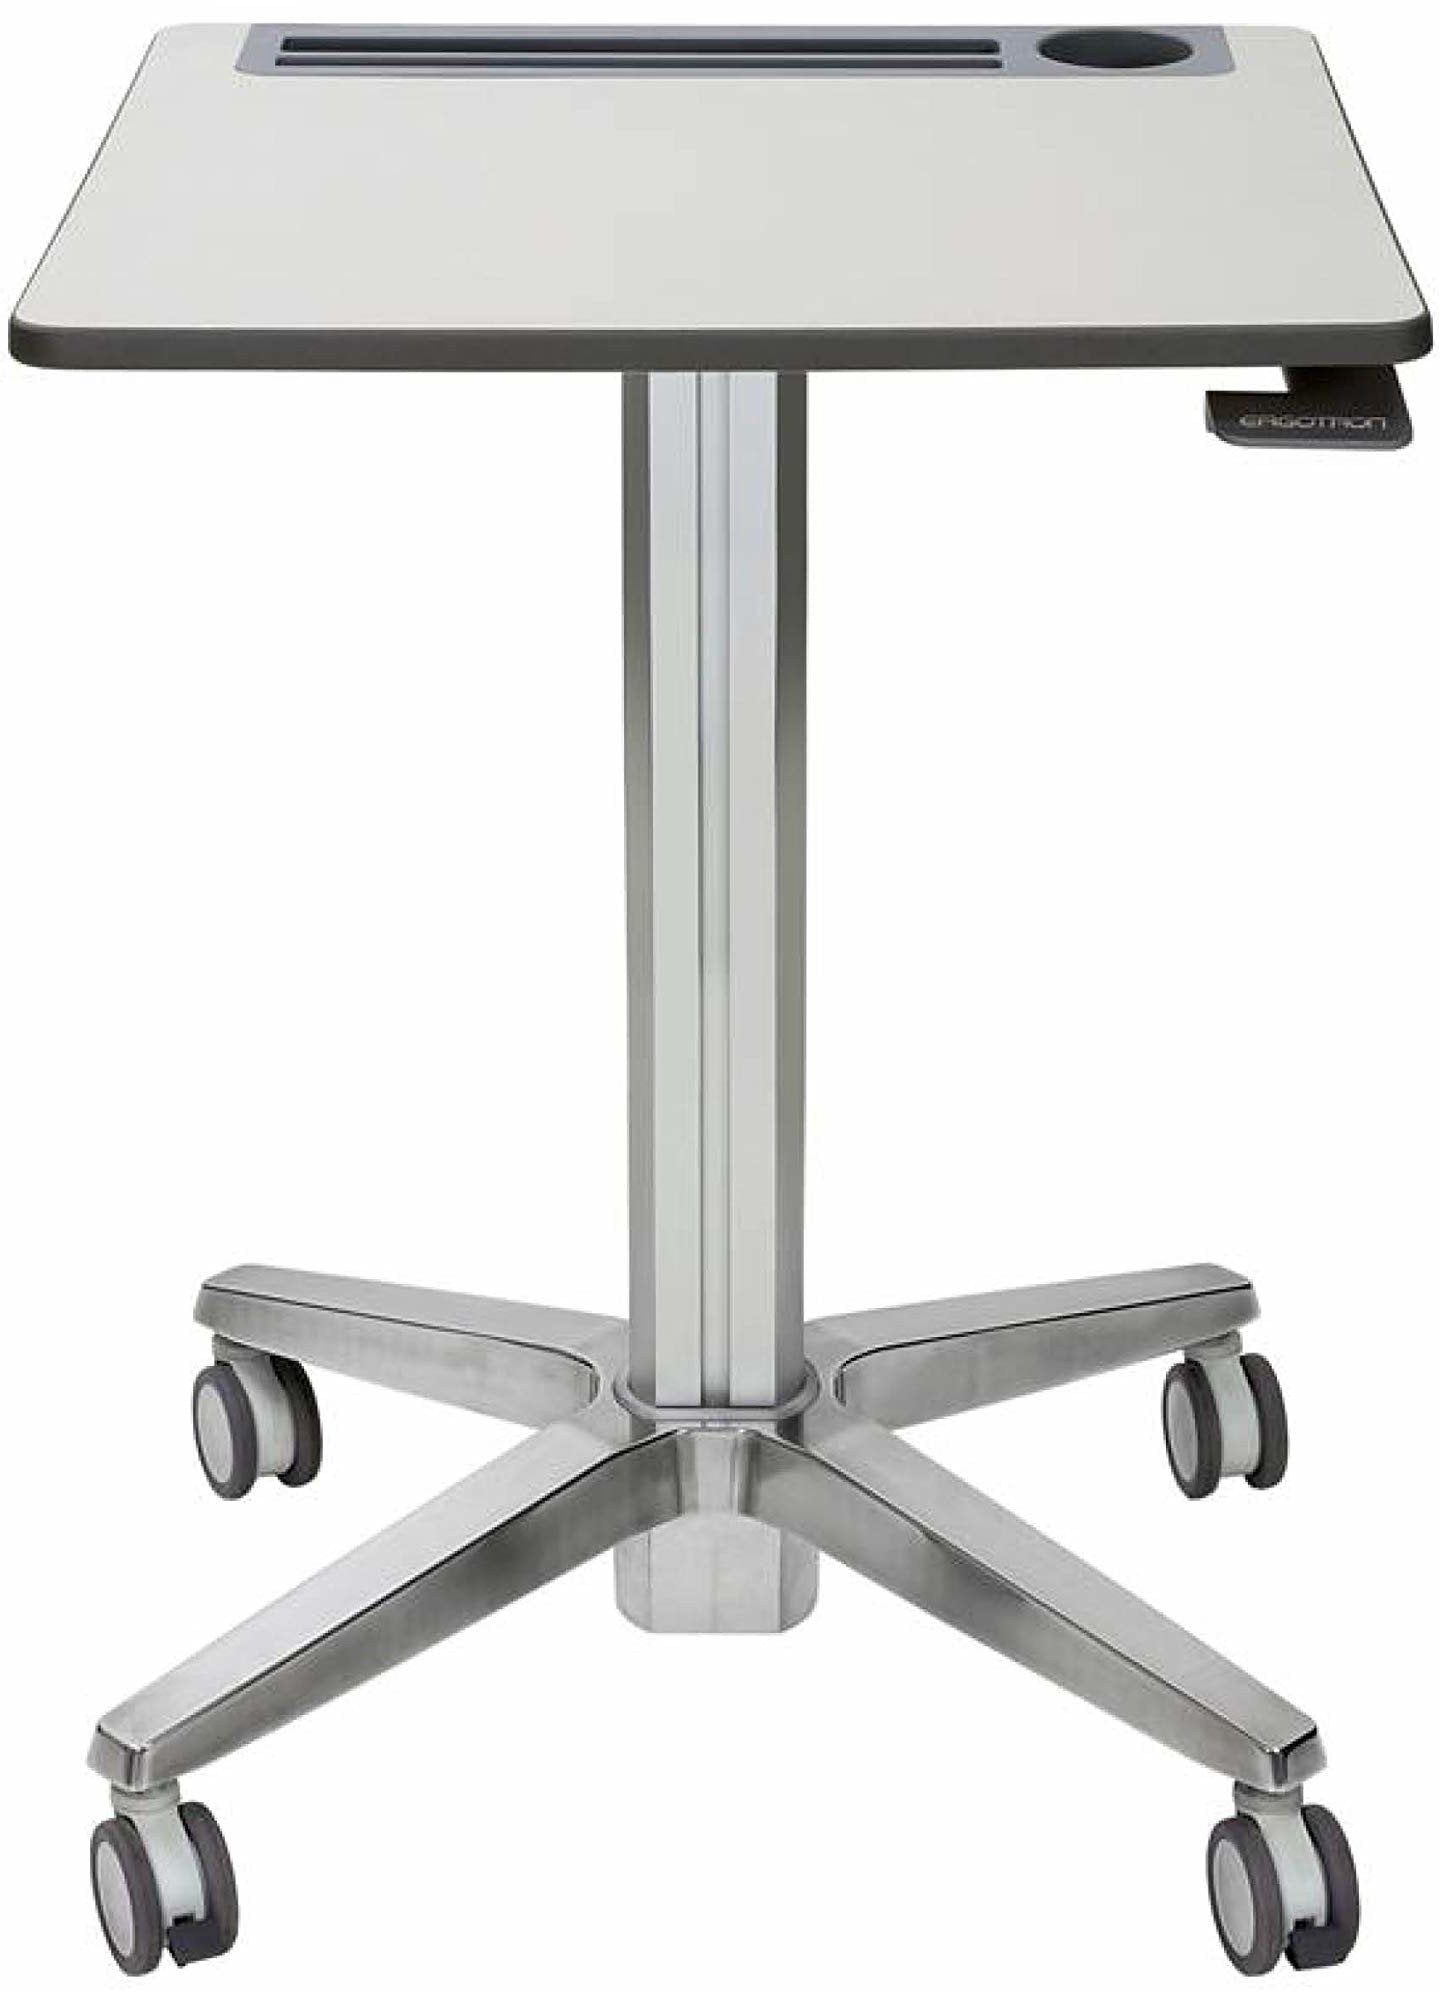 Ergotron LearnFit® Sit-Stand Desk